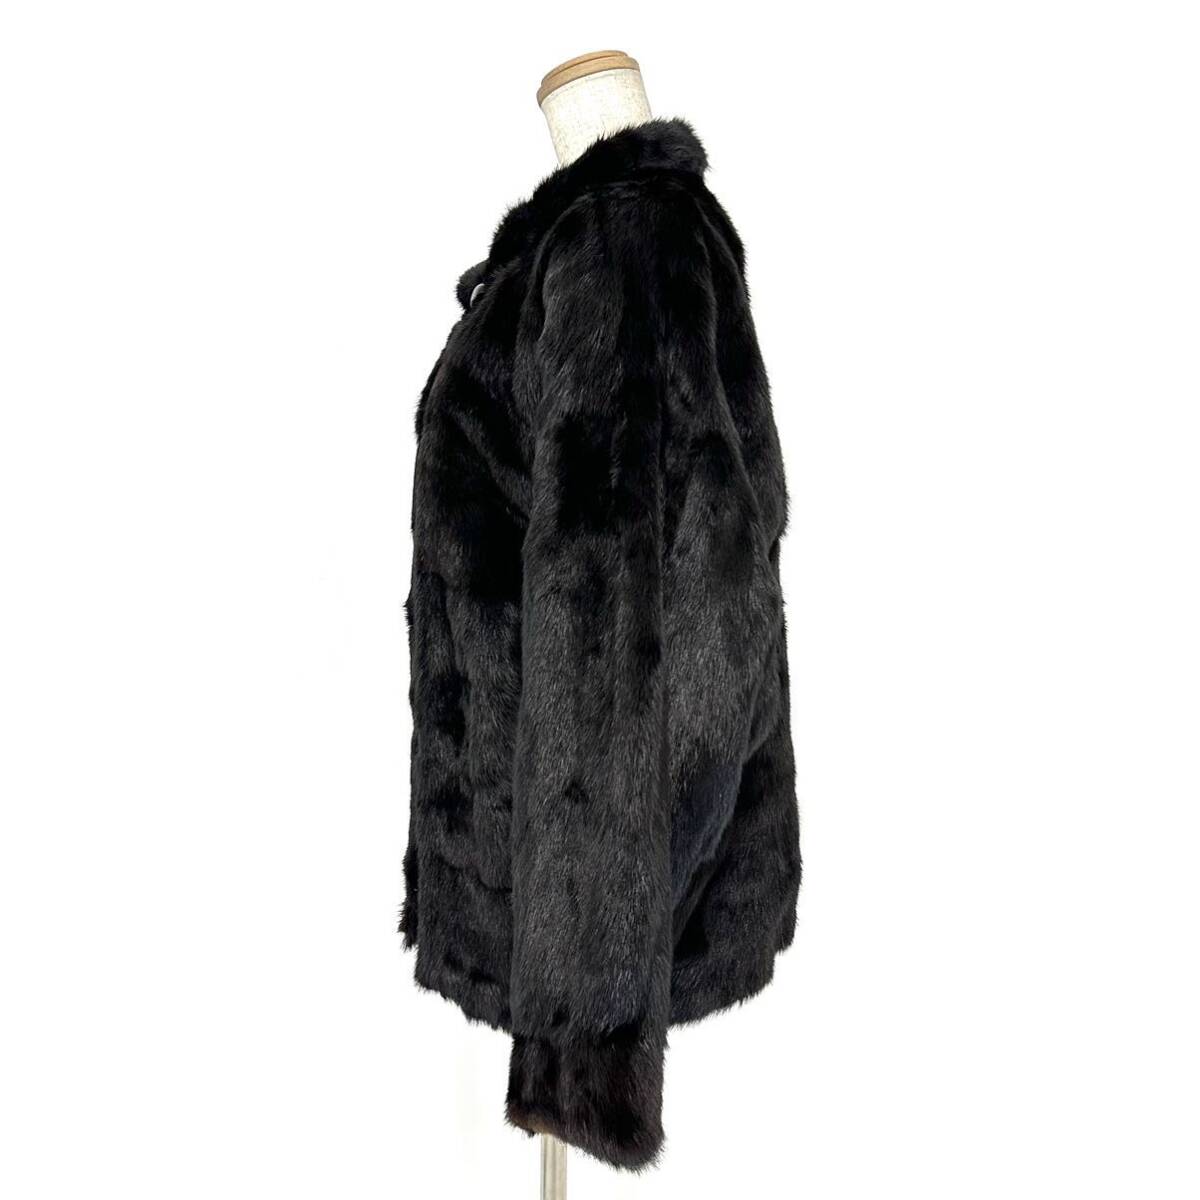 【貂商】h2678 ブラックミンク ハーフコート デザインコート セミロング ミンクコート 貂皮 mink身丈 約60cmの画像2